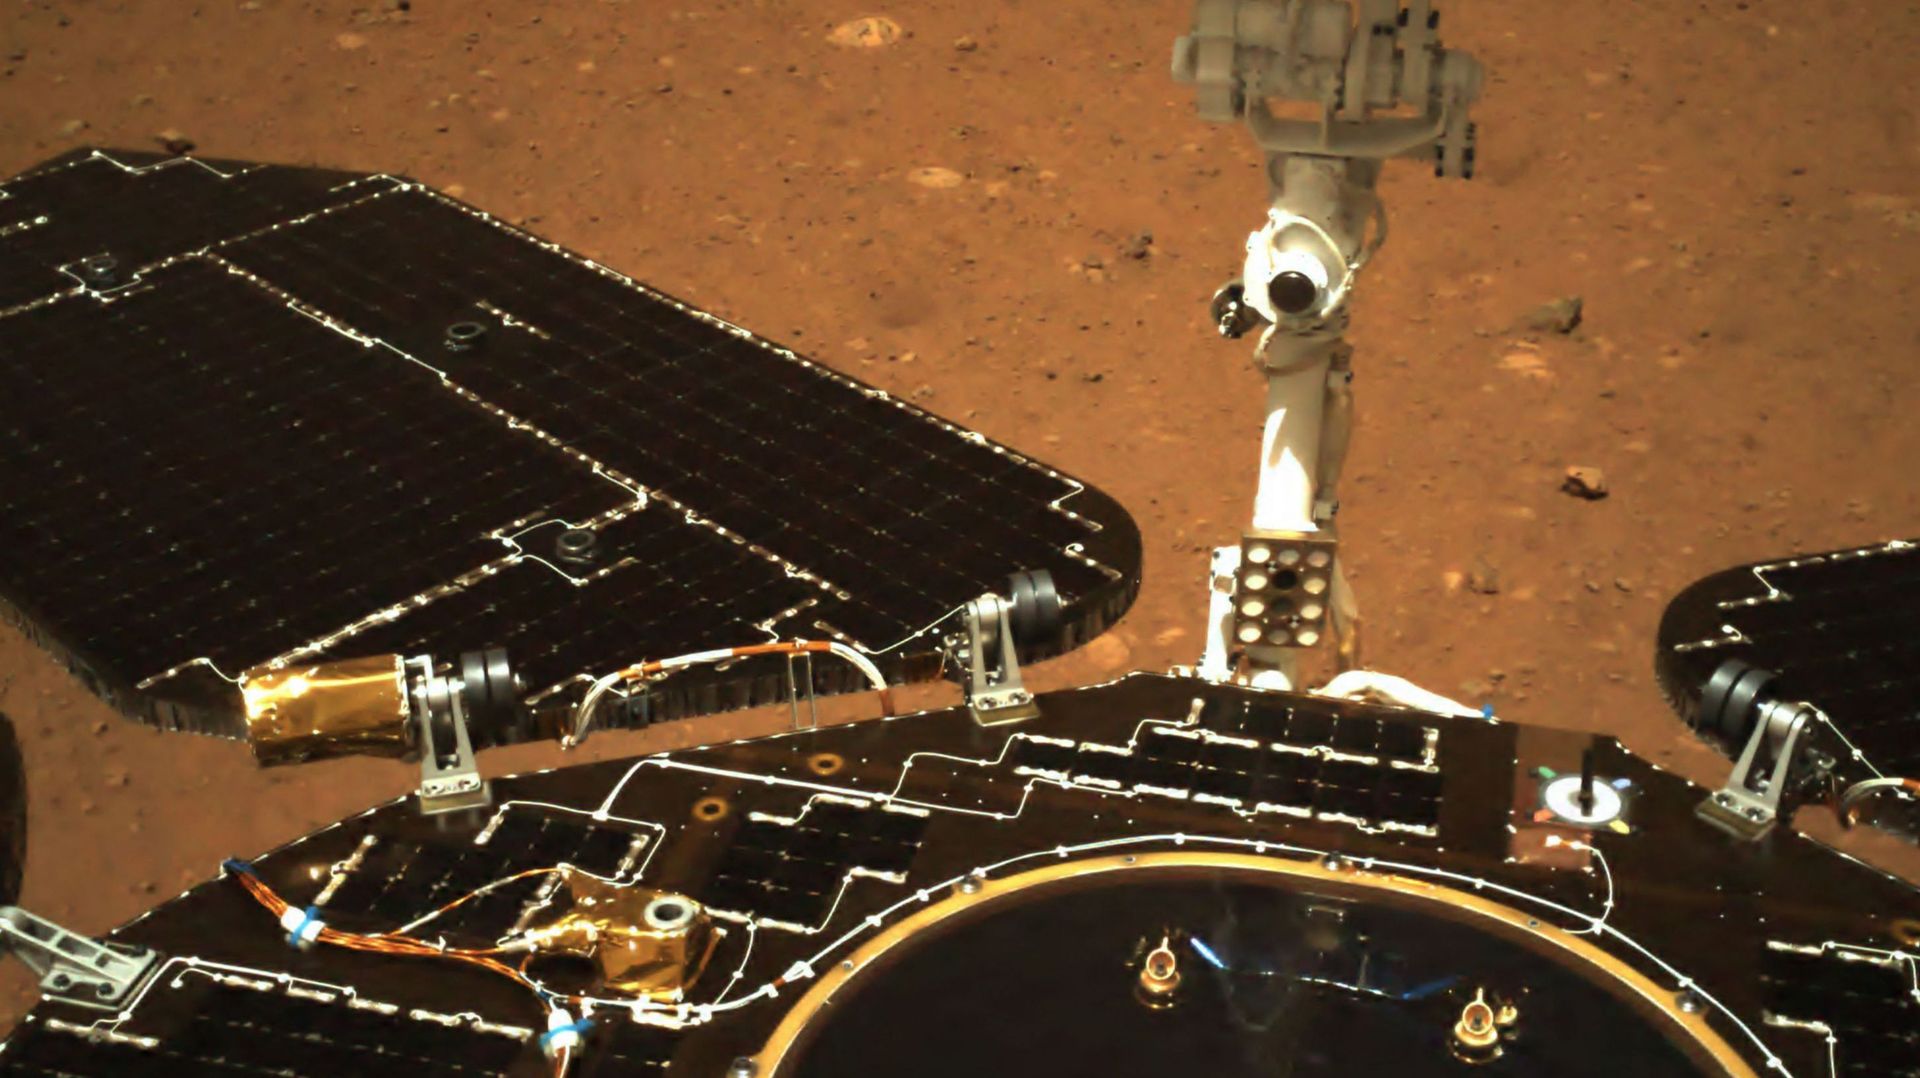 Le rover chinois Zhurong, posé sur Mars, a envoyé ses premières photos